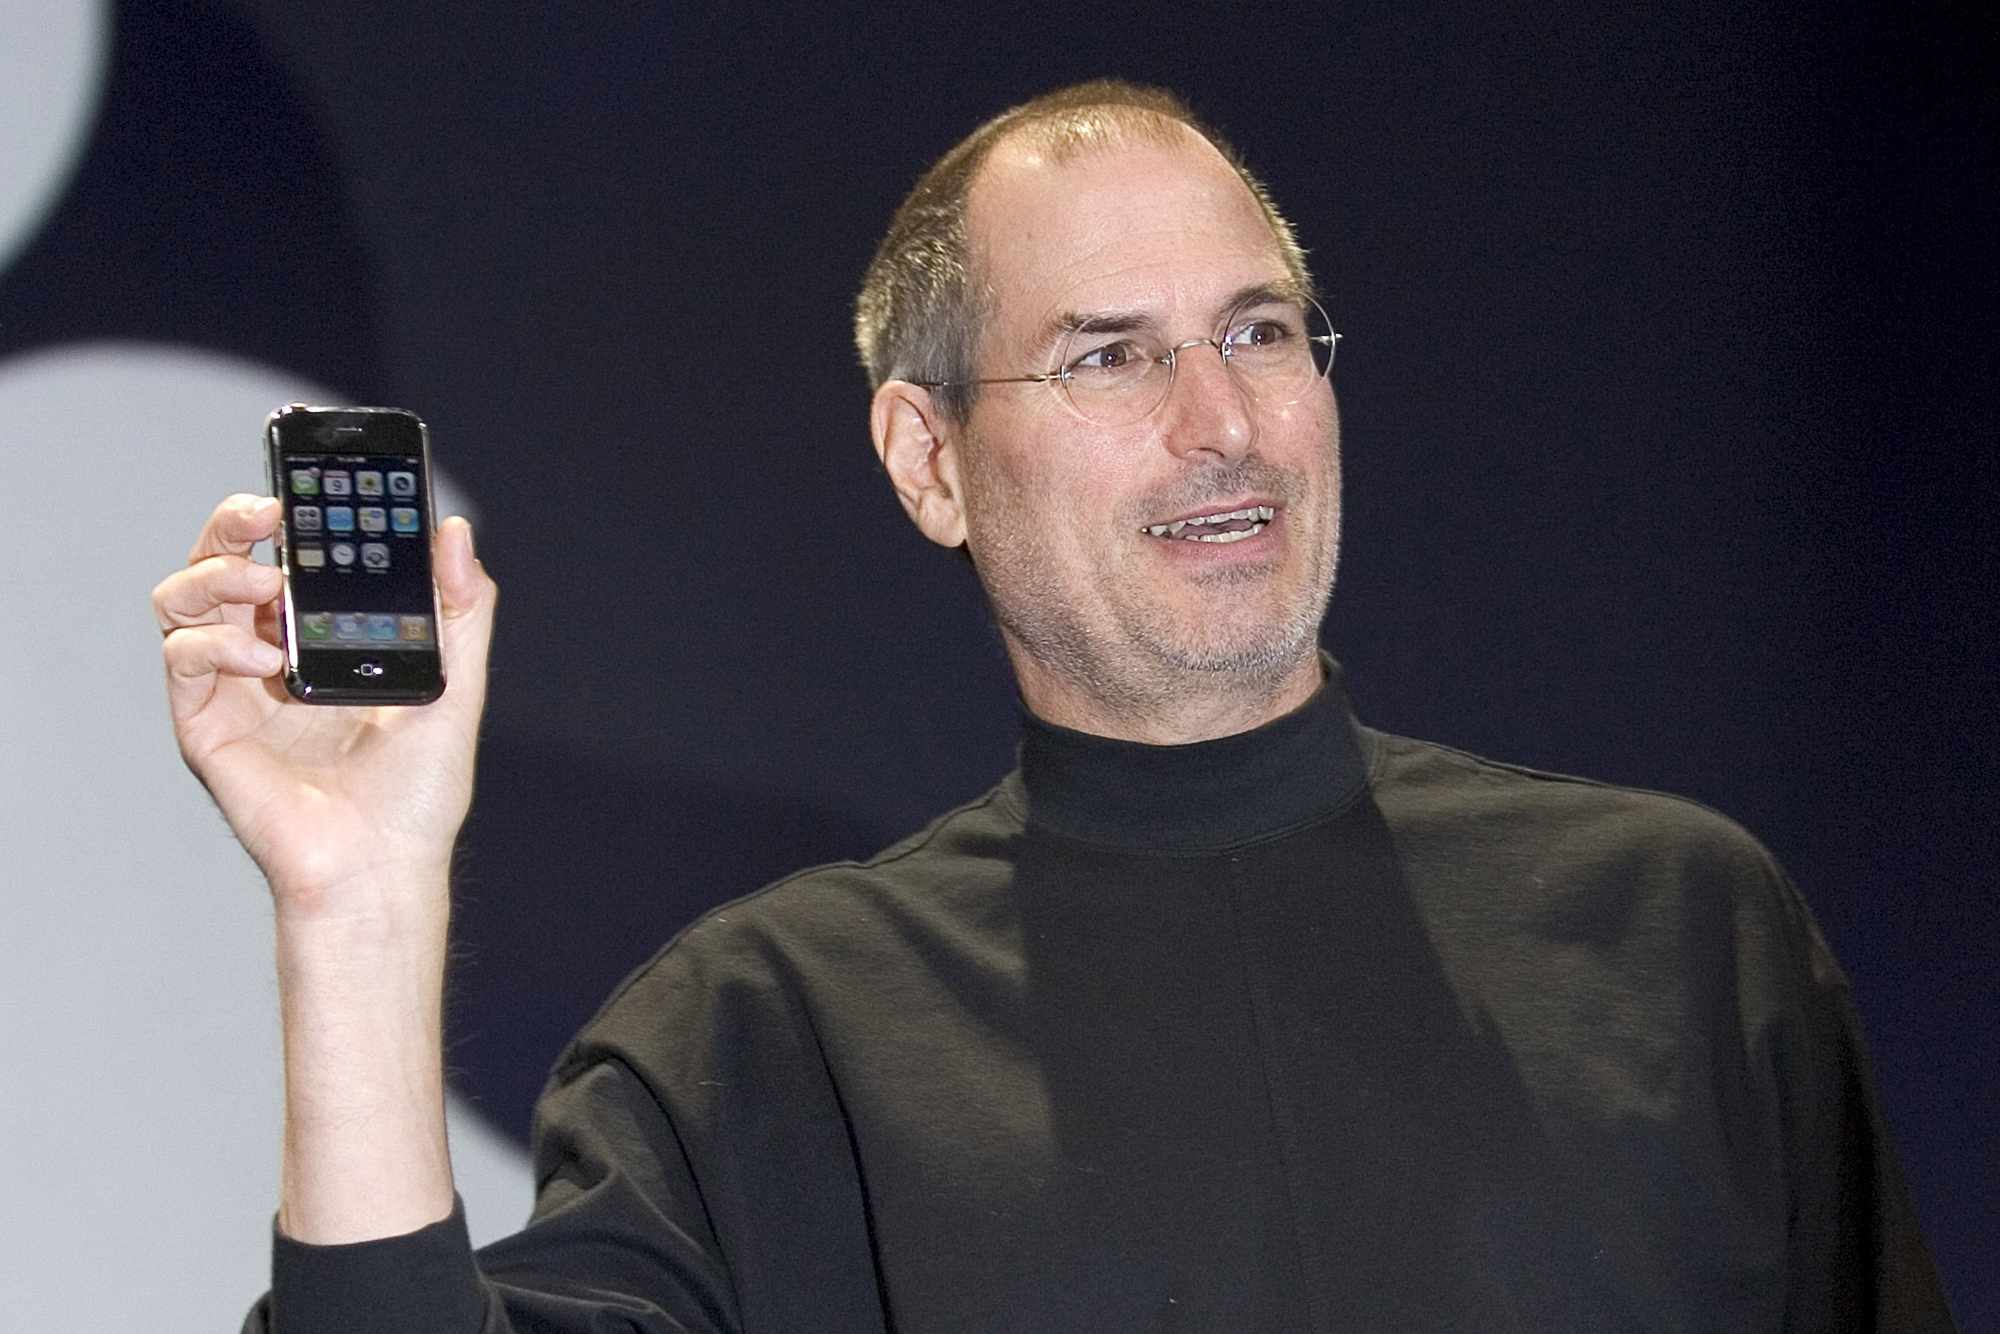 Steve Jobs esittelee Apple iPhonen MacWorld Expossa